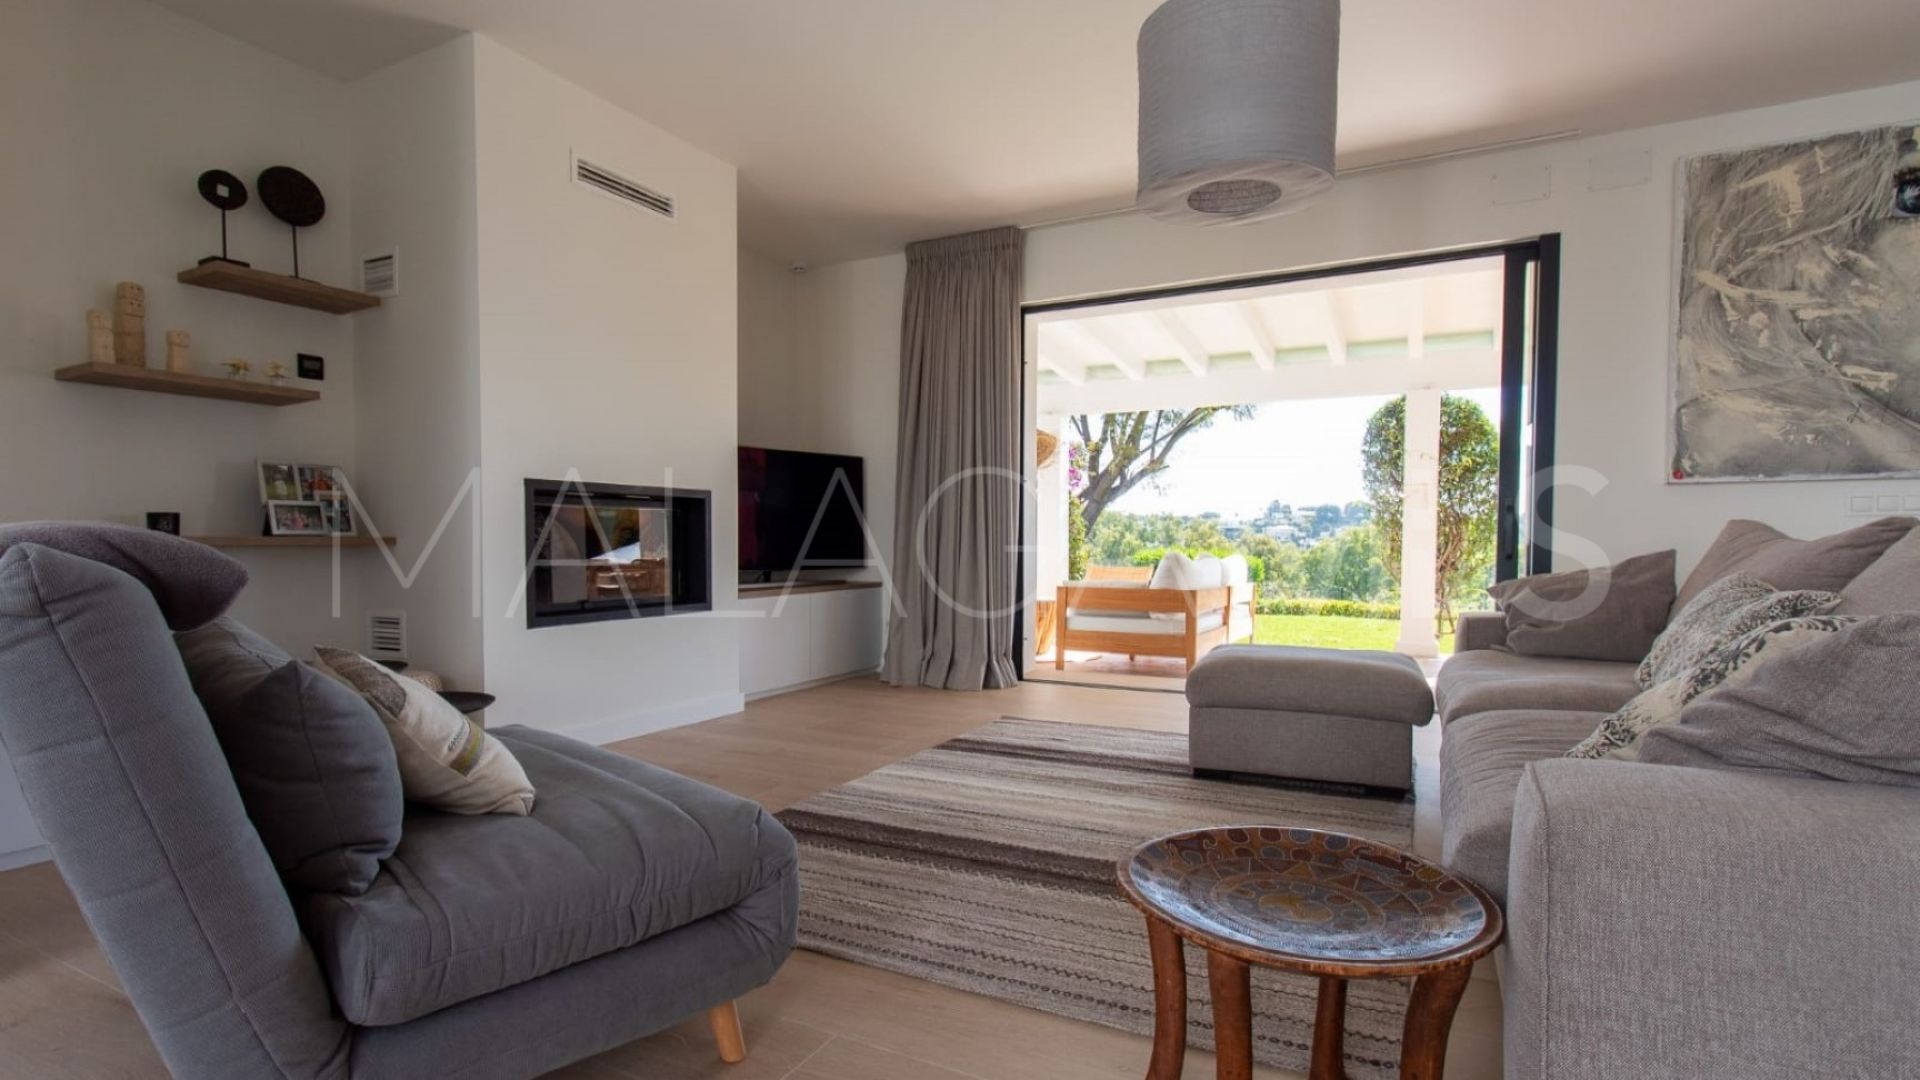 Villa for sale in Altos del Paraiso with 4 bedrooms